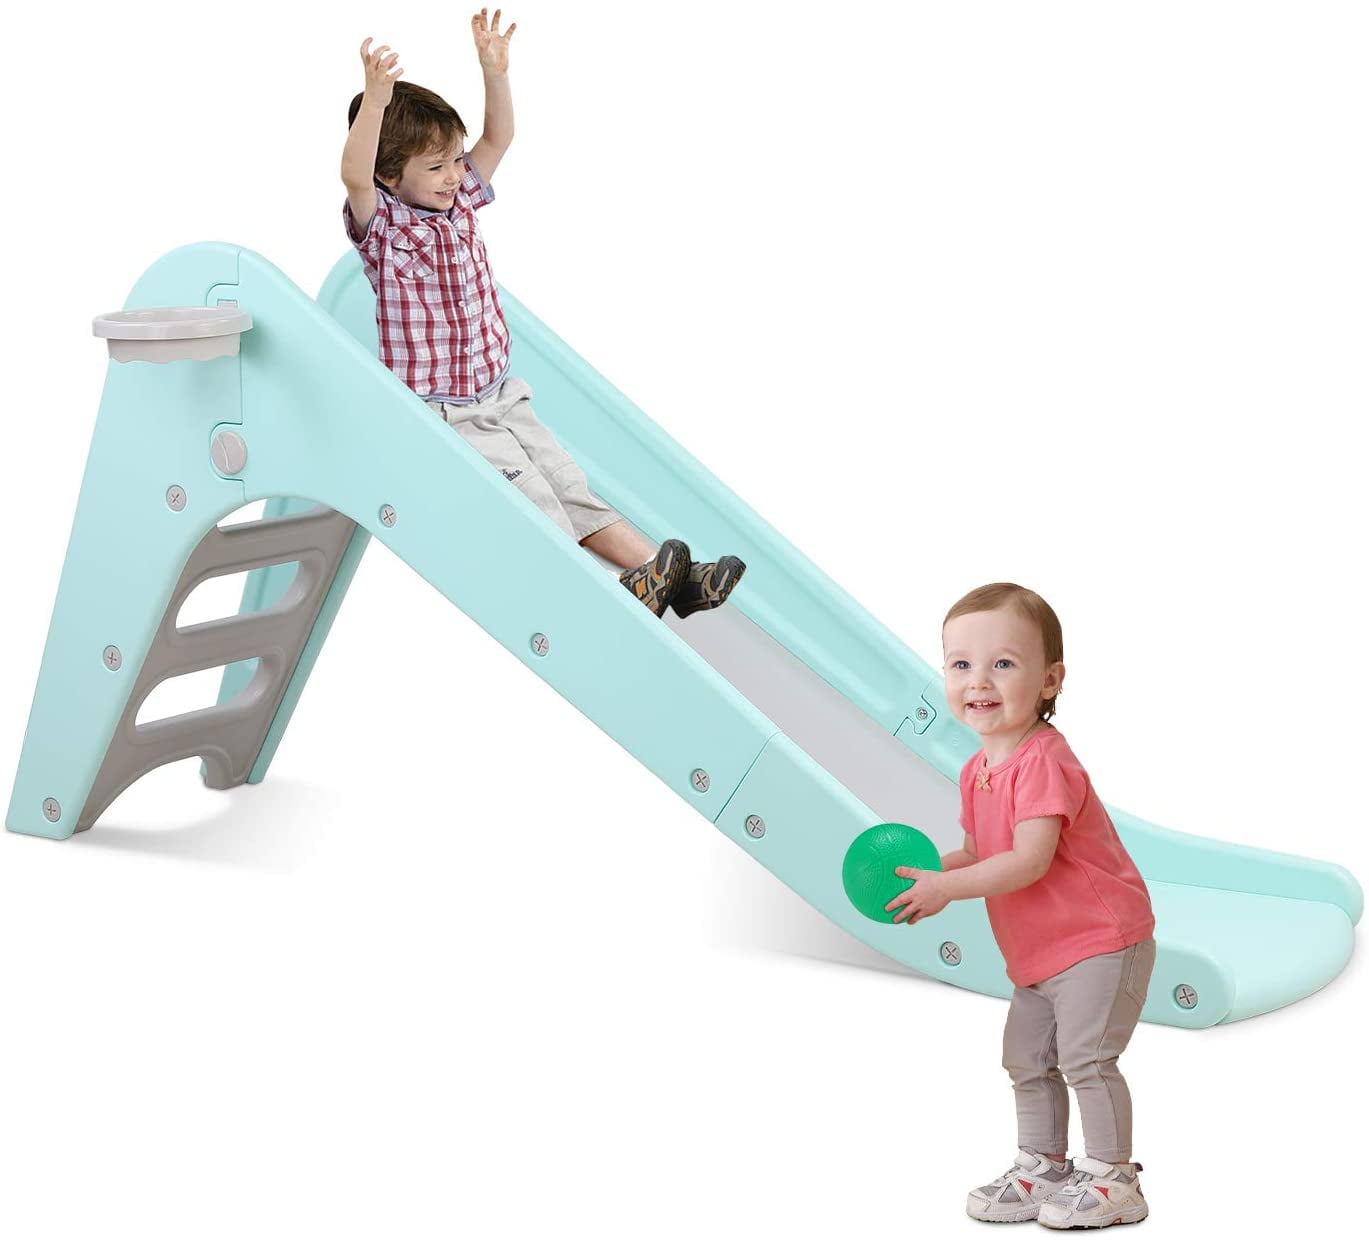 Kids Slide Freestanding Baby Toddler Play Climber Slide Set Indoor Outdoor 